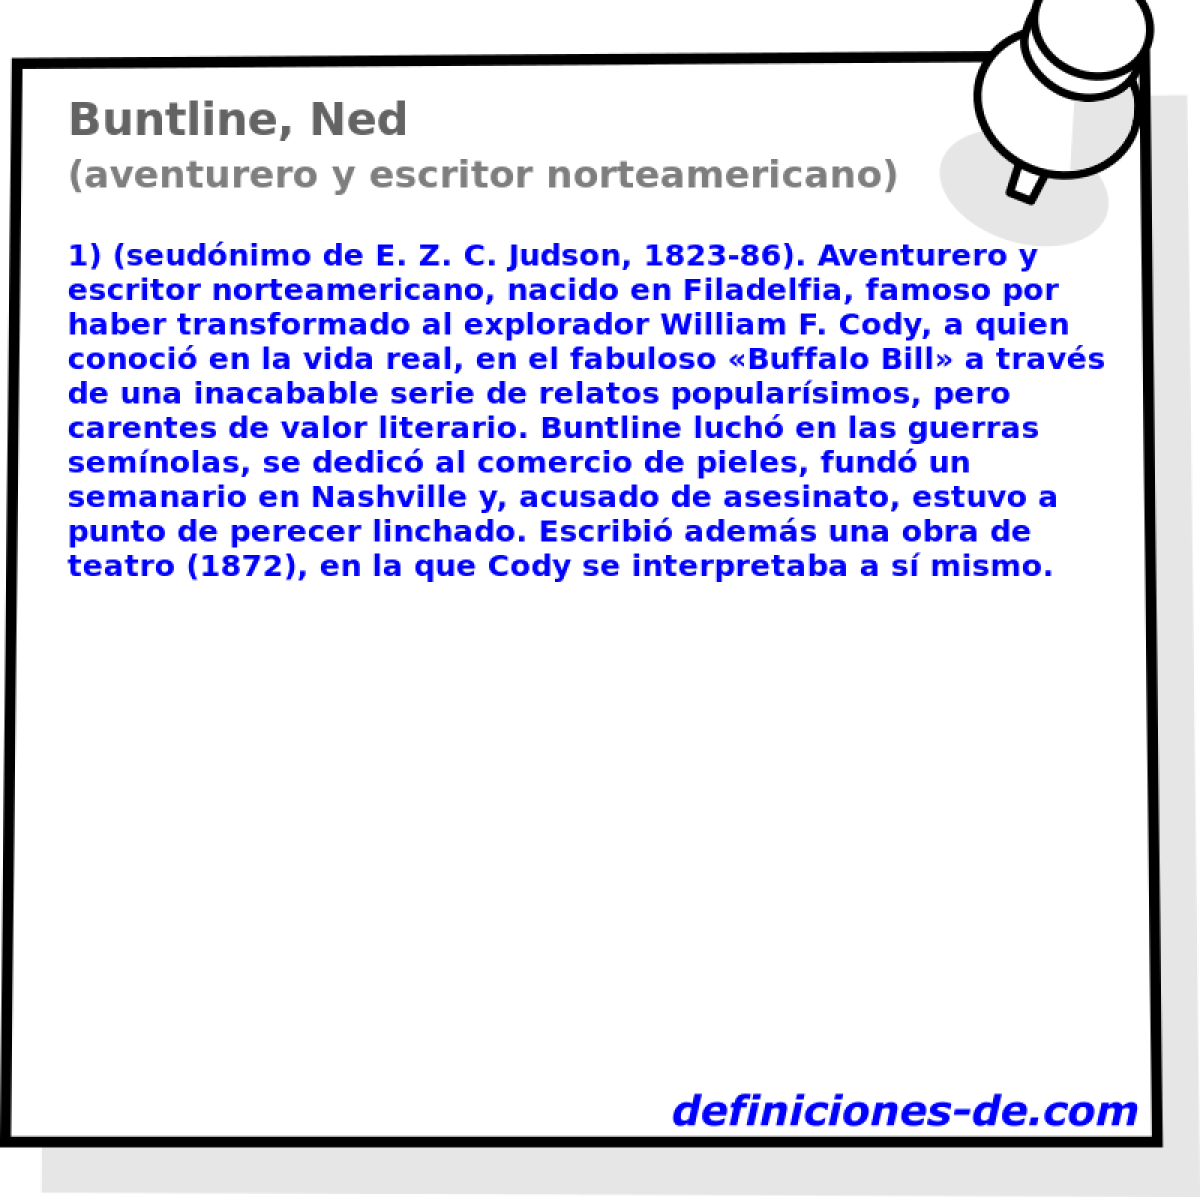 Buntline, Ned (aventurero y escritor norteamericano)